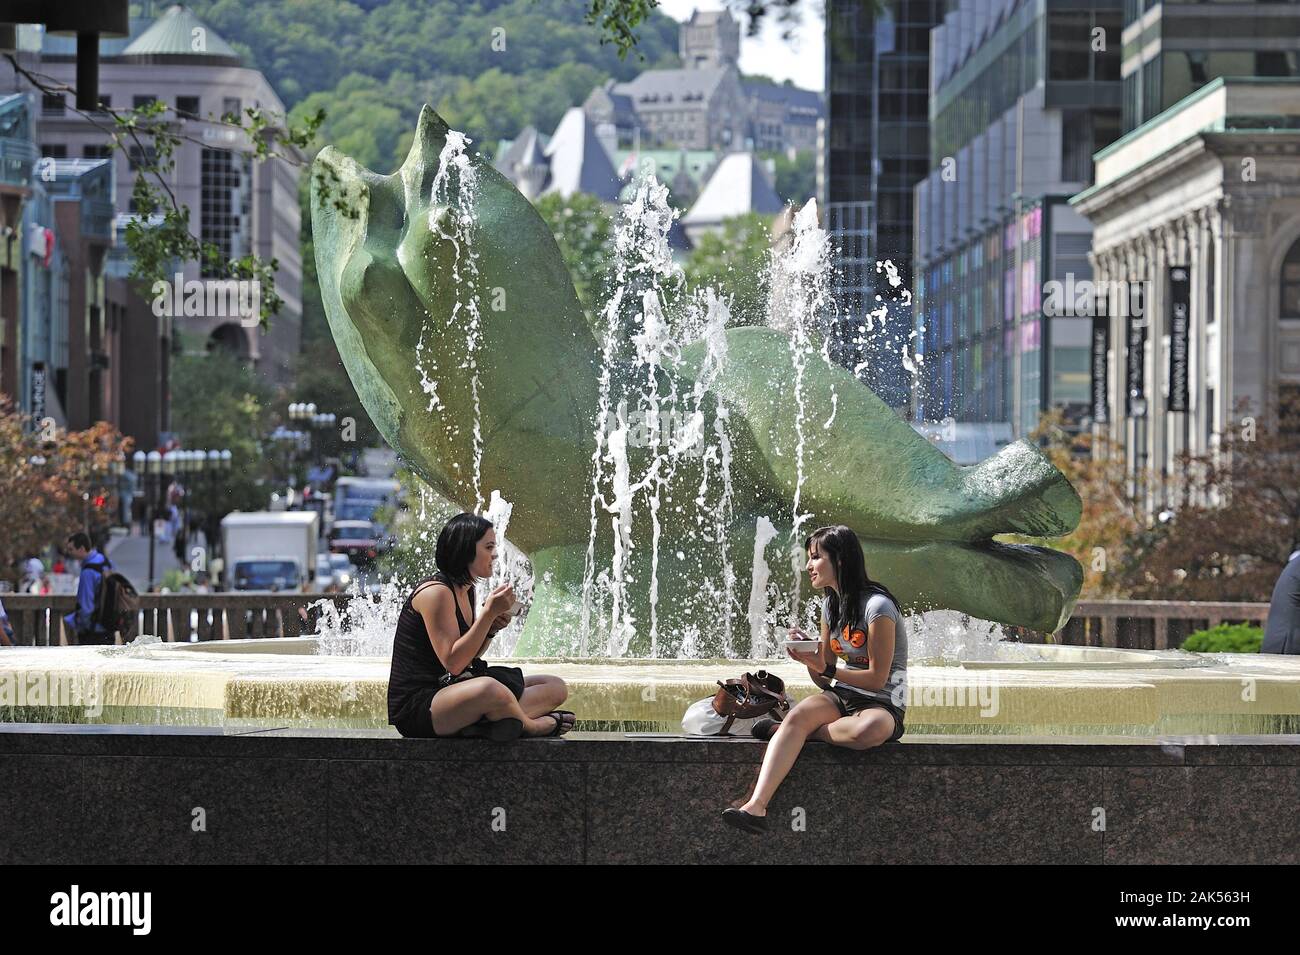 Monreal: Junge Frauen am Springbrunnen auf dem Vorplatz vor dem Wolkenkratzer Place Ville-Marie, Kanada Osten | usage worldwide Stock Photo